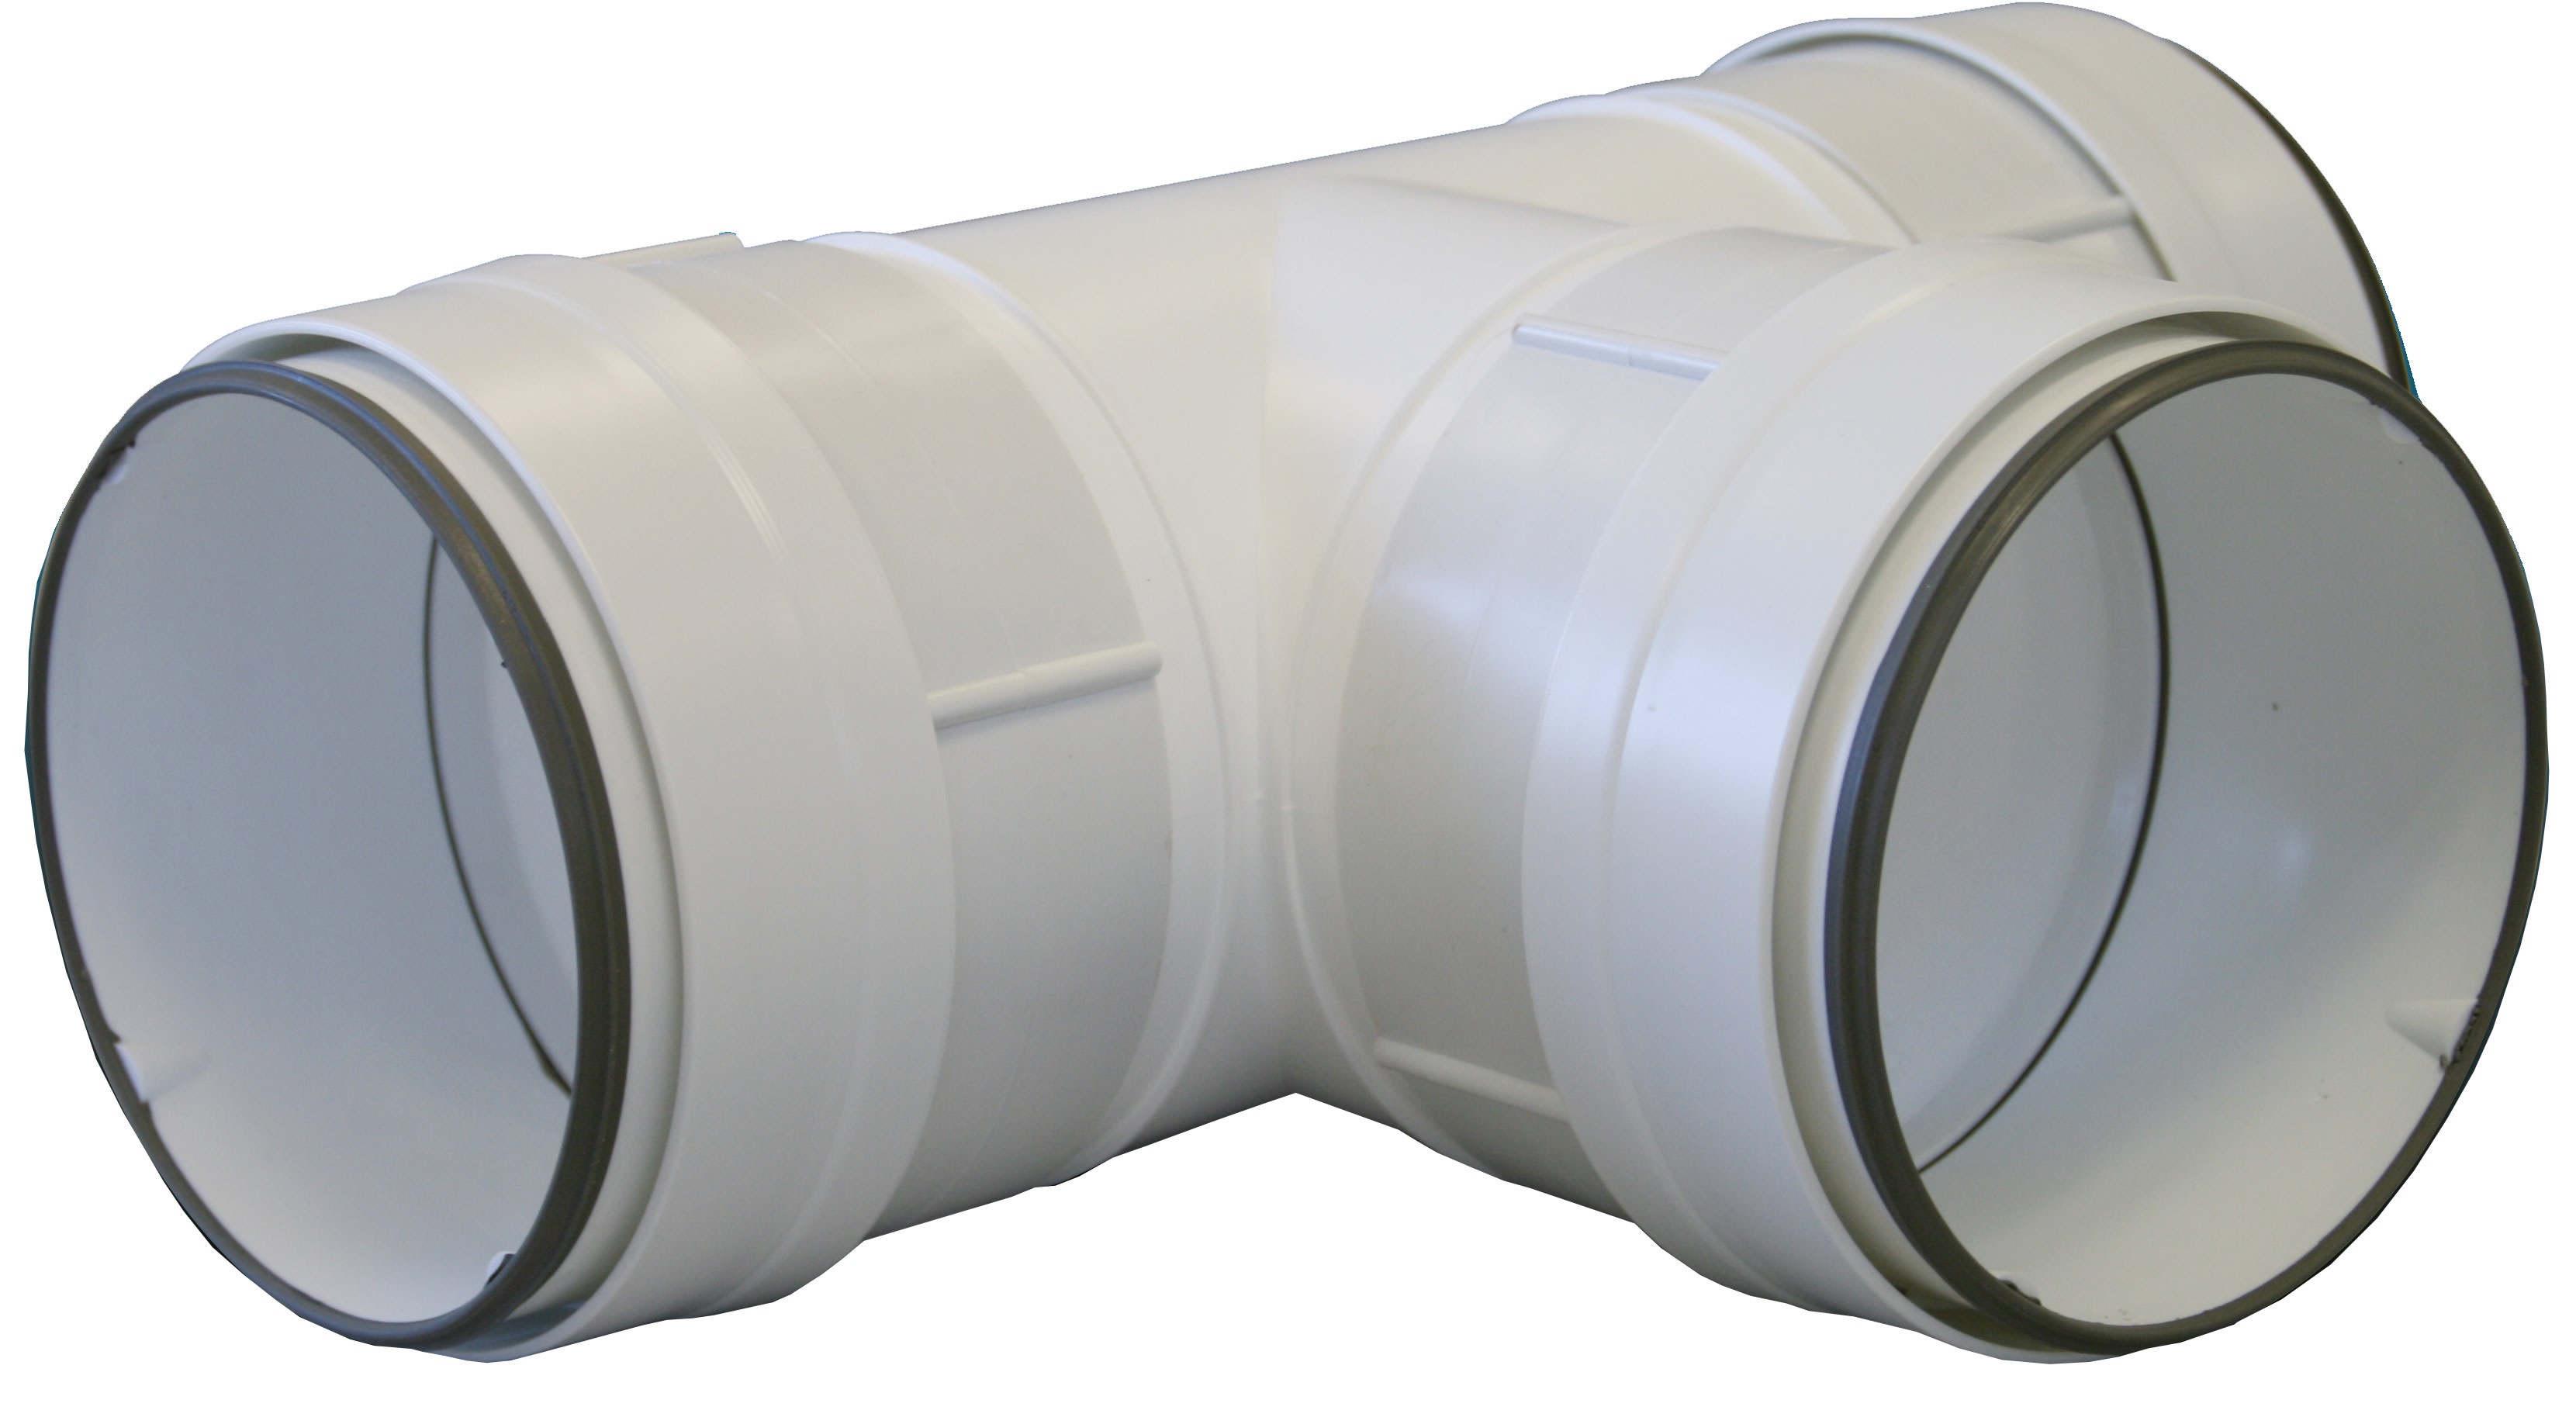 S&P - Té 90° PVC rigide à joints d'étanchéité, D circulaires 125 mm, gamme TUBPLA